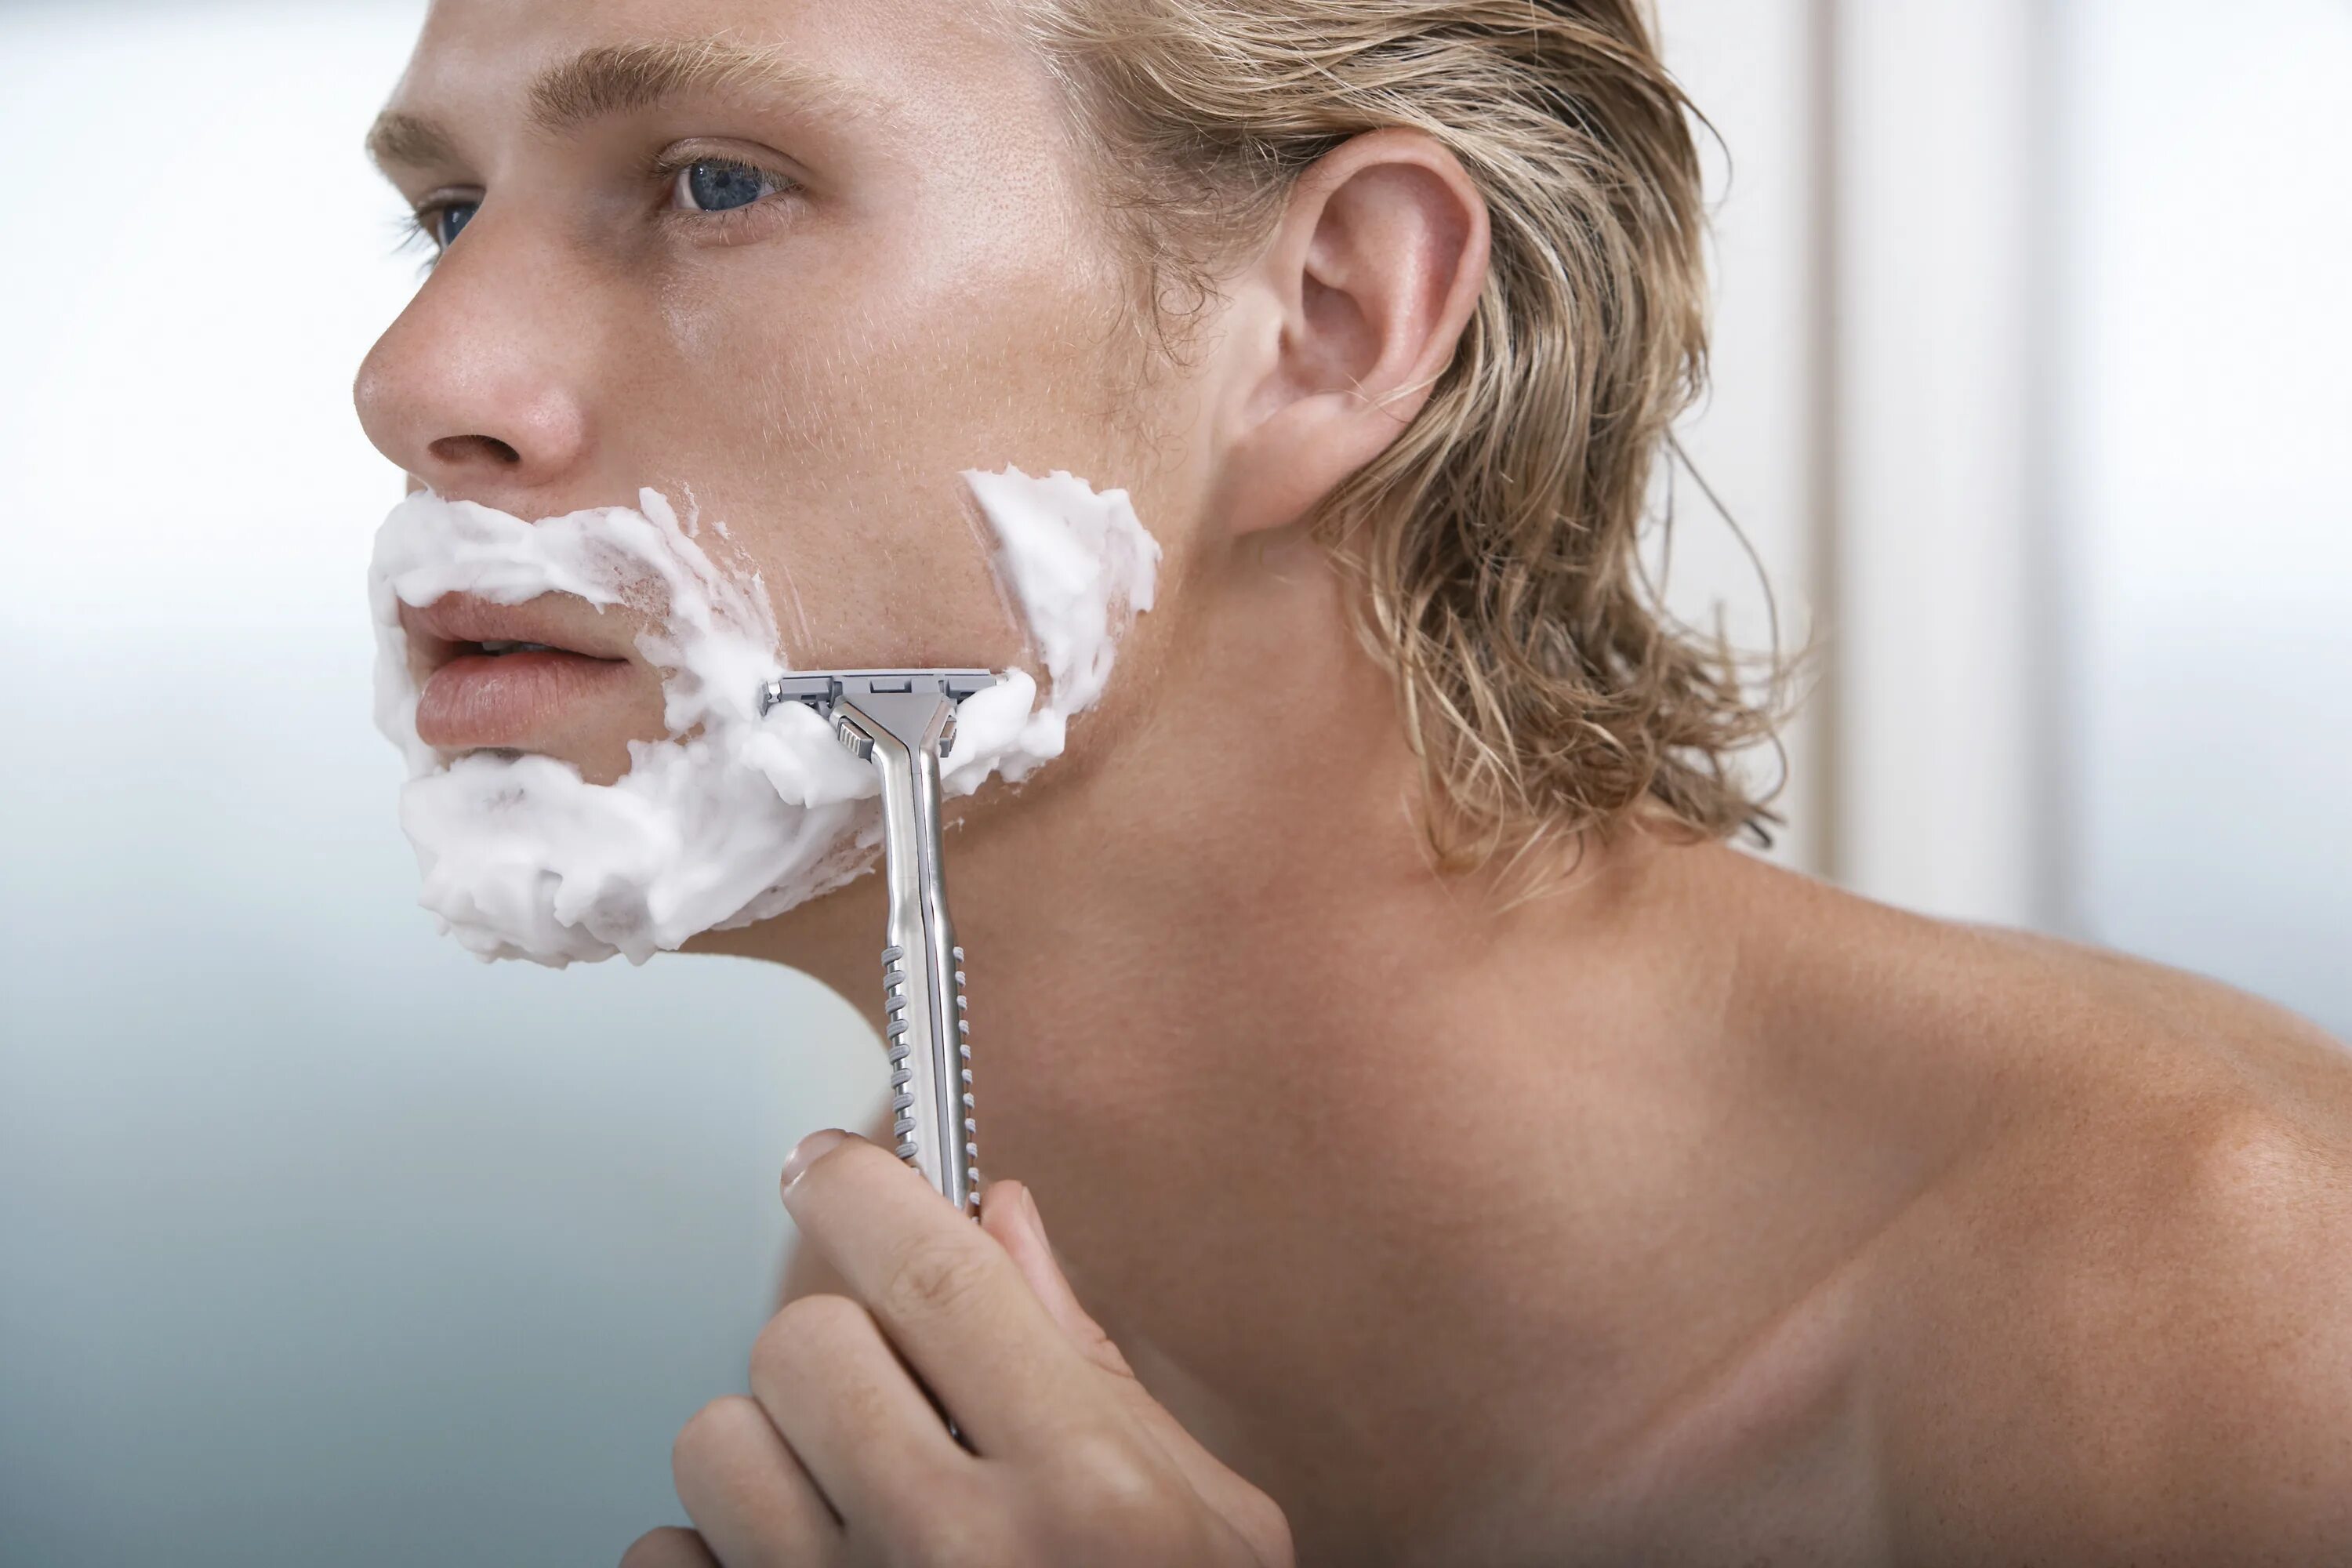 Бритье лица. Мужское бритье лица. Станок для бритья. Мужчина бреется. Правильно брить видео